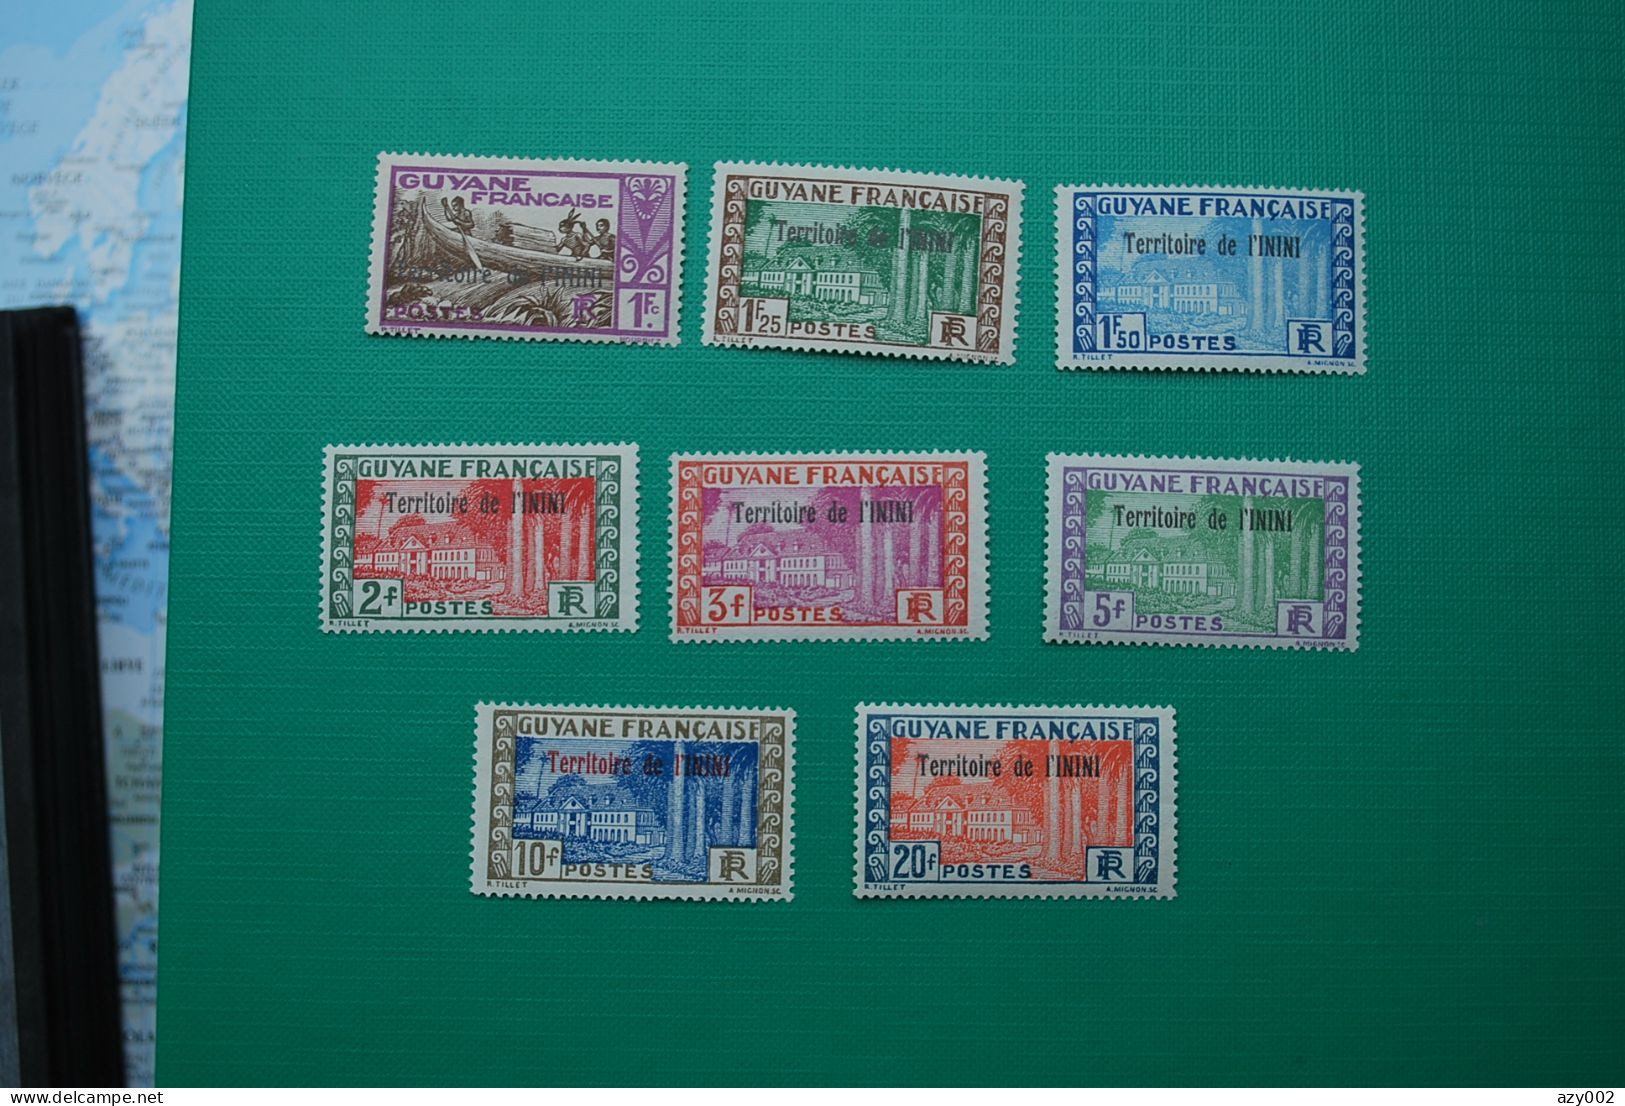 GUYANNE territoire de l'ININI - 1932 à 1938  Collection de 34 timbres neufs  (détail numéros dans description) !